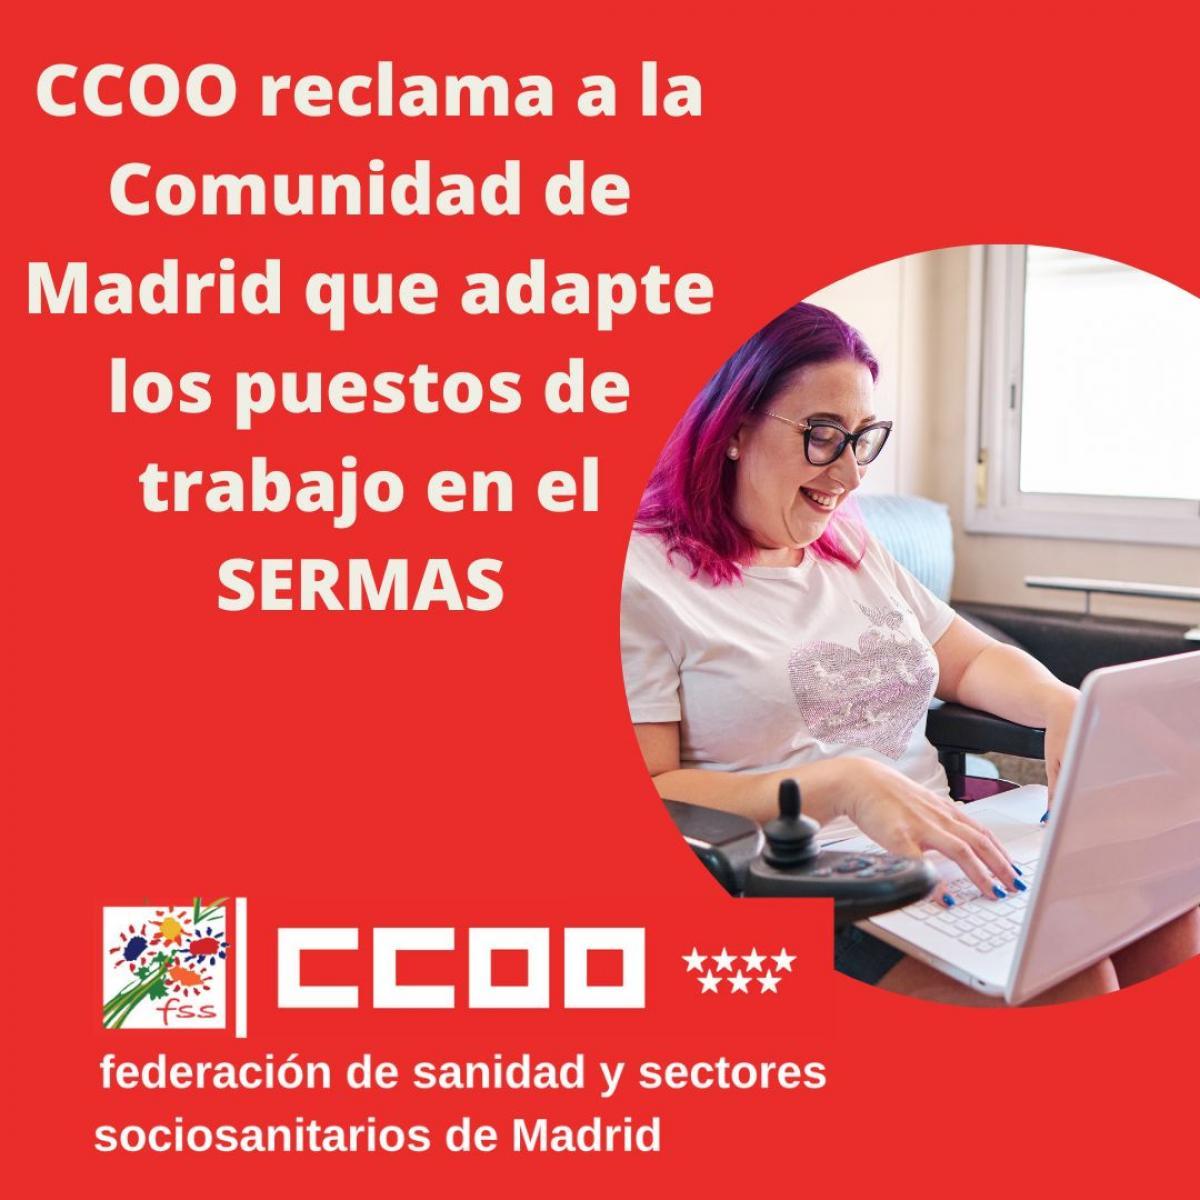 CCOO reclama la adaptación de puestos de trabajo en el Servicio Madrileño de Salud